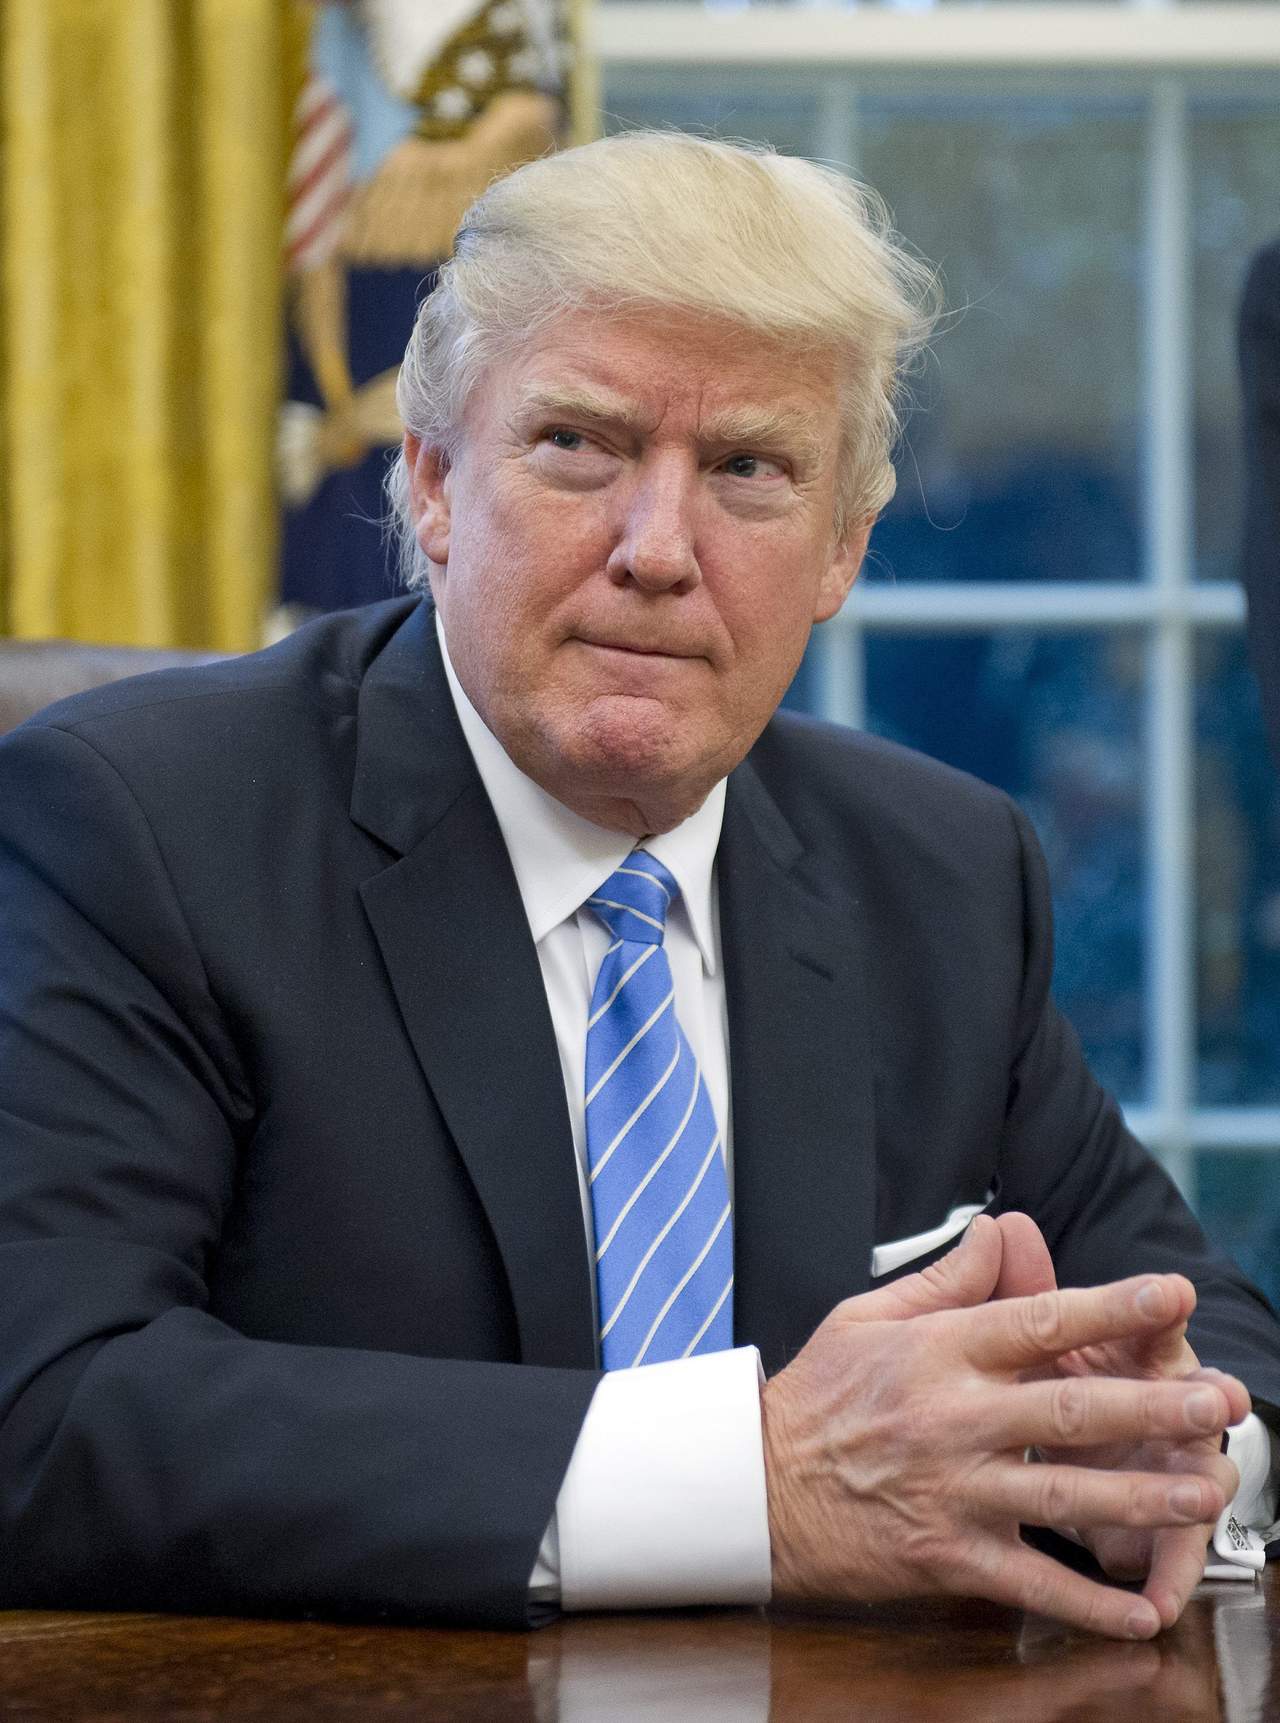 'El presidente Trump subrayó que Estados Unidos sigue comprometido con la relación bilateral', agregó. (EFE)